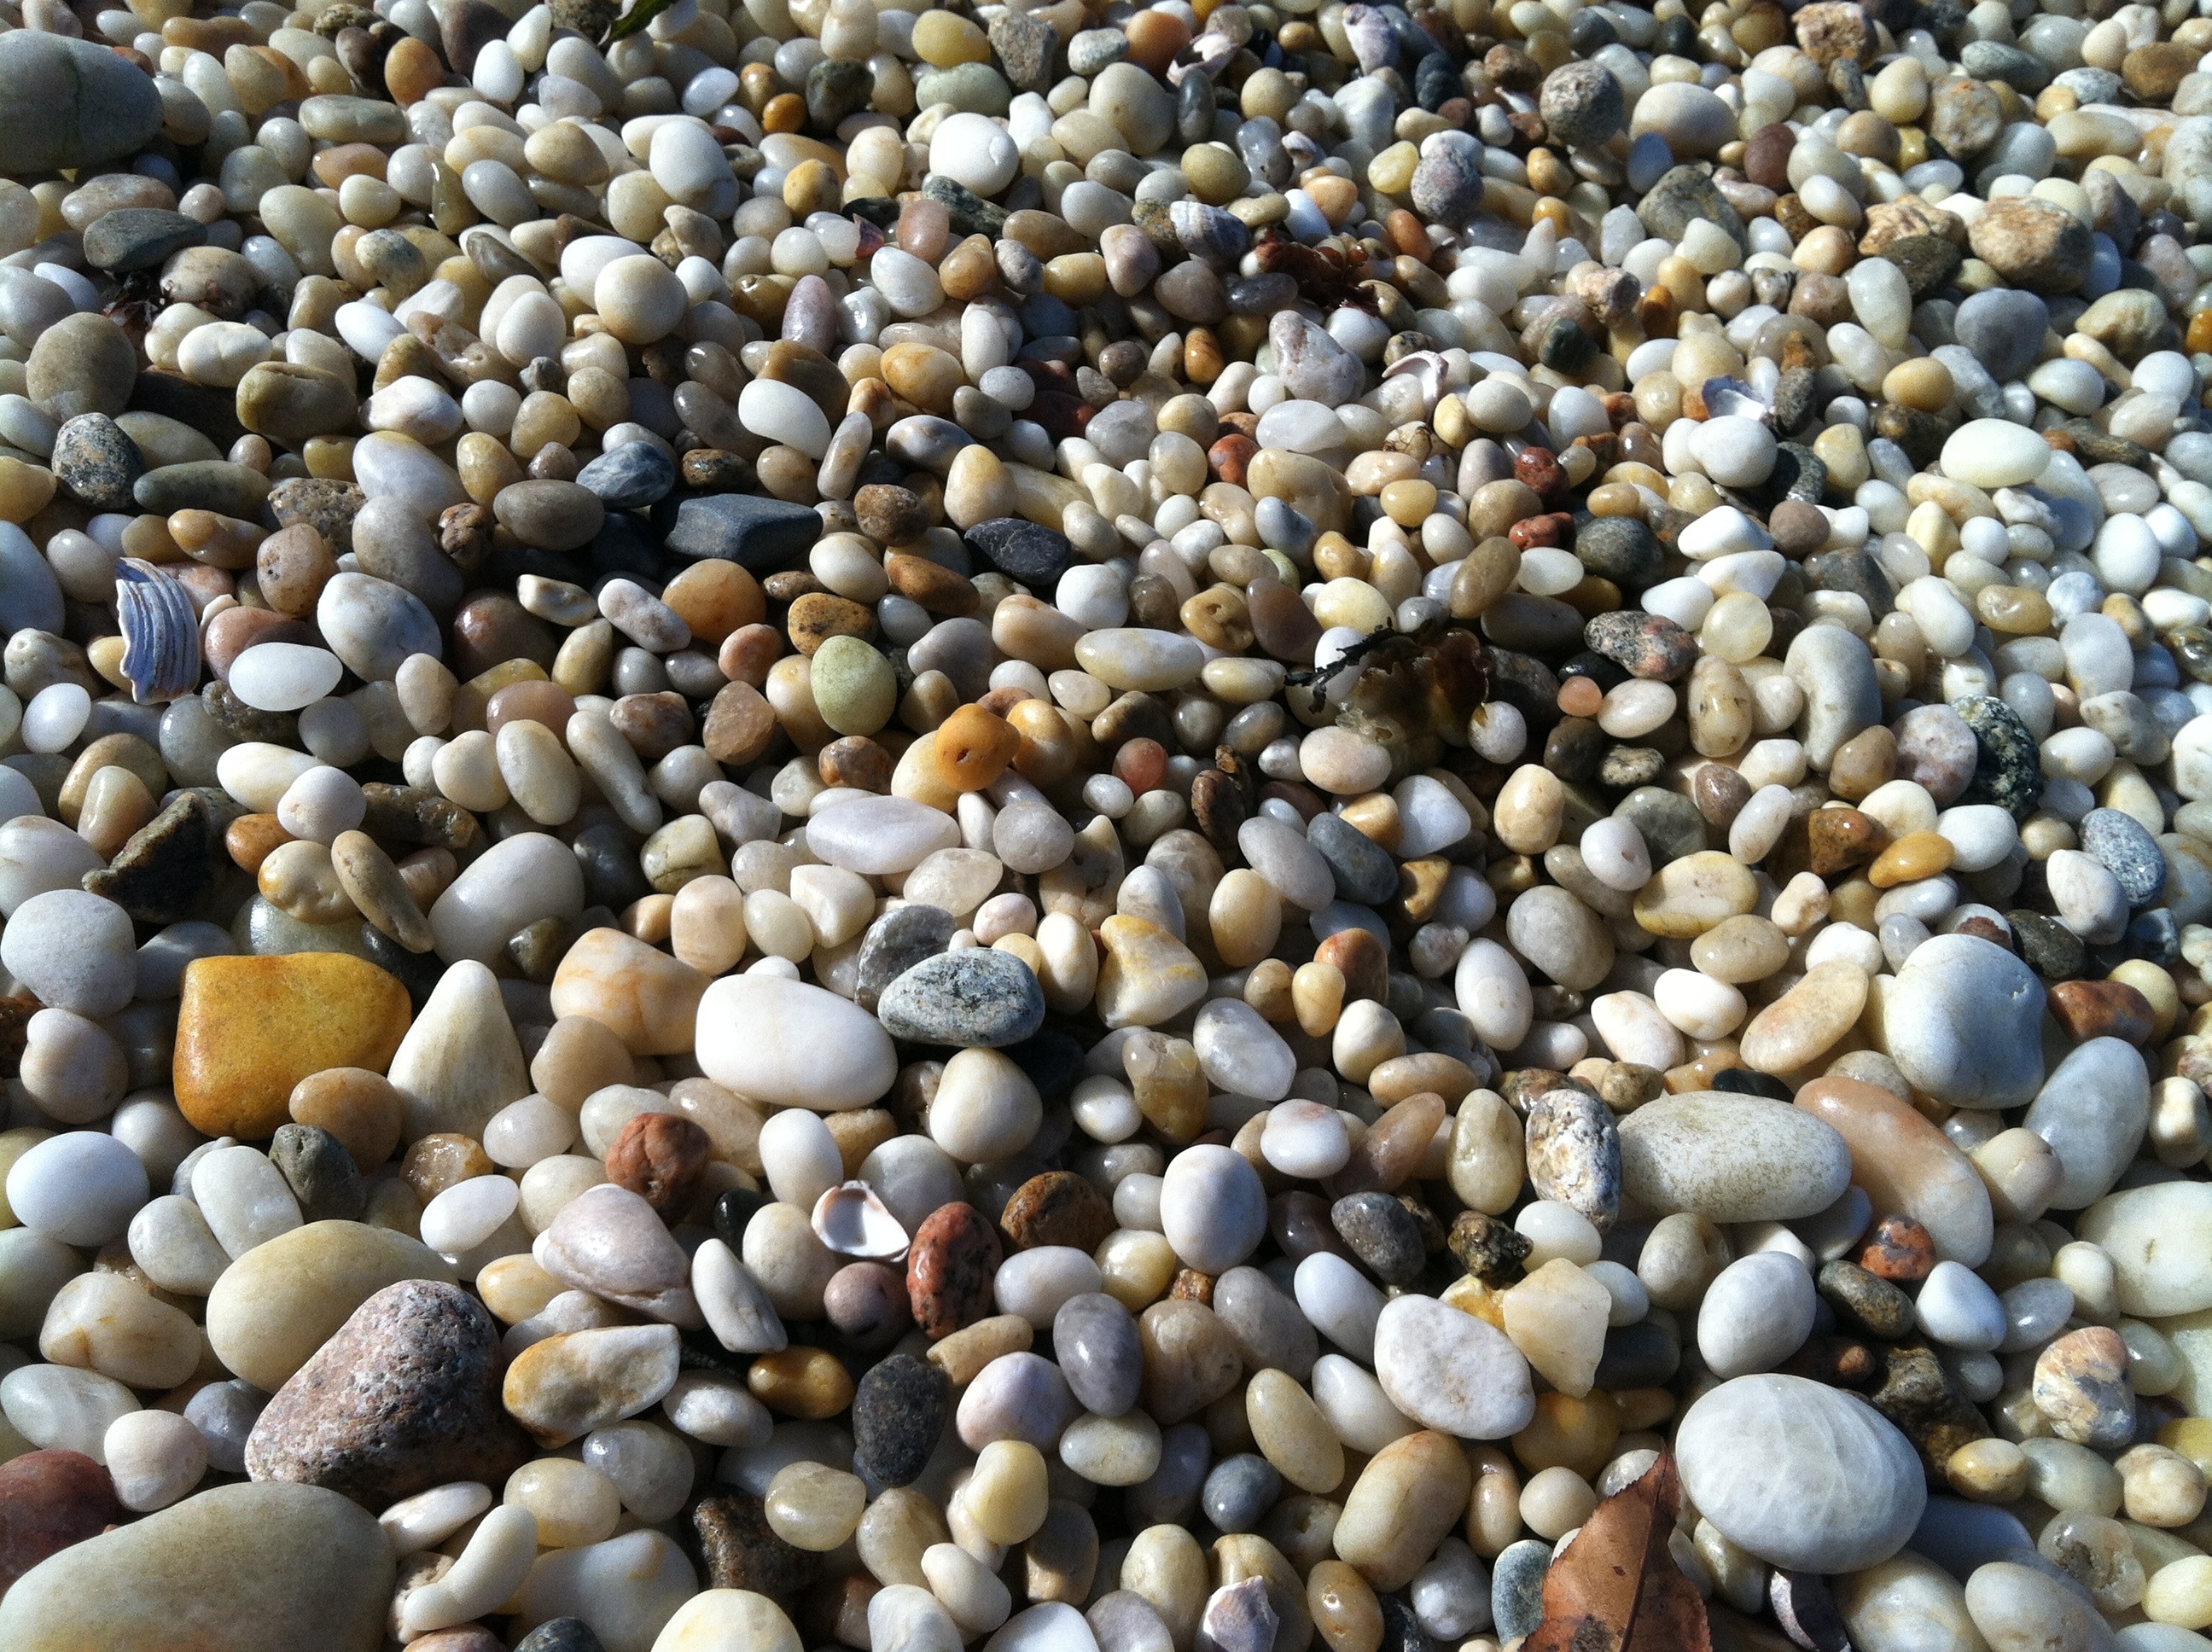 stone pebbles